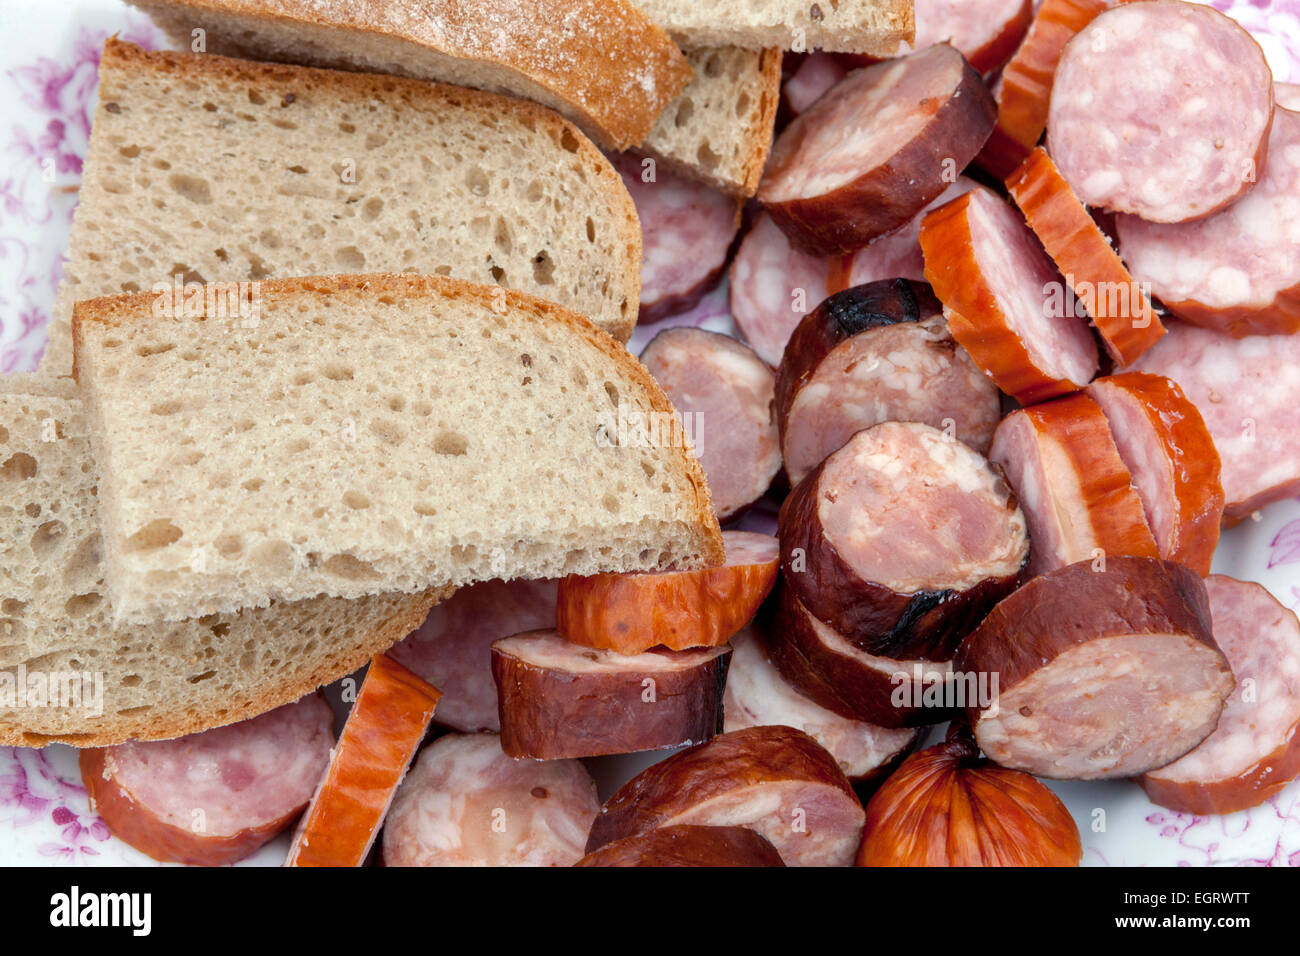 Tranches de pain et salami saucisse tchèque Banque D'Images